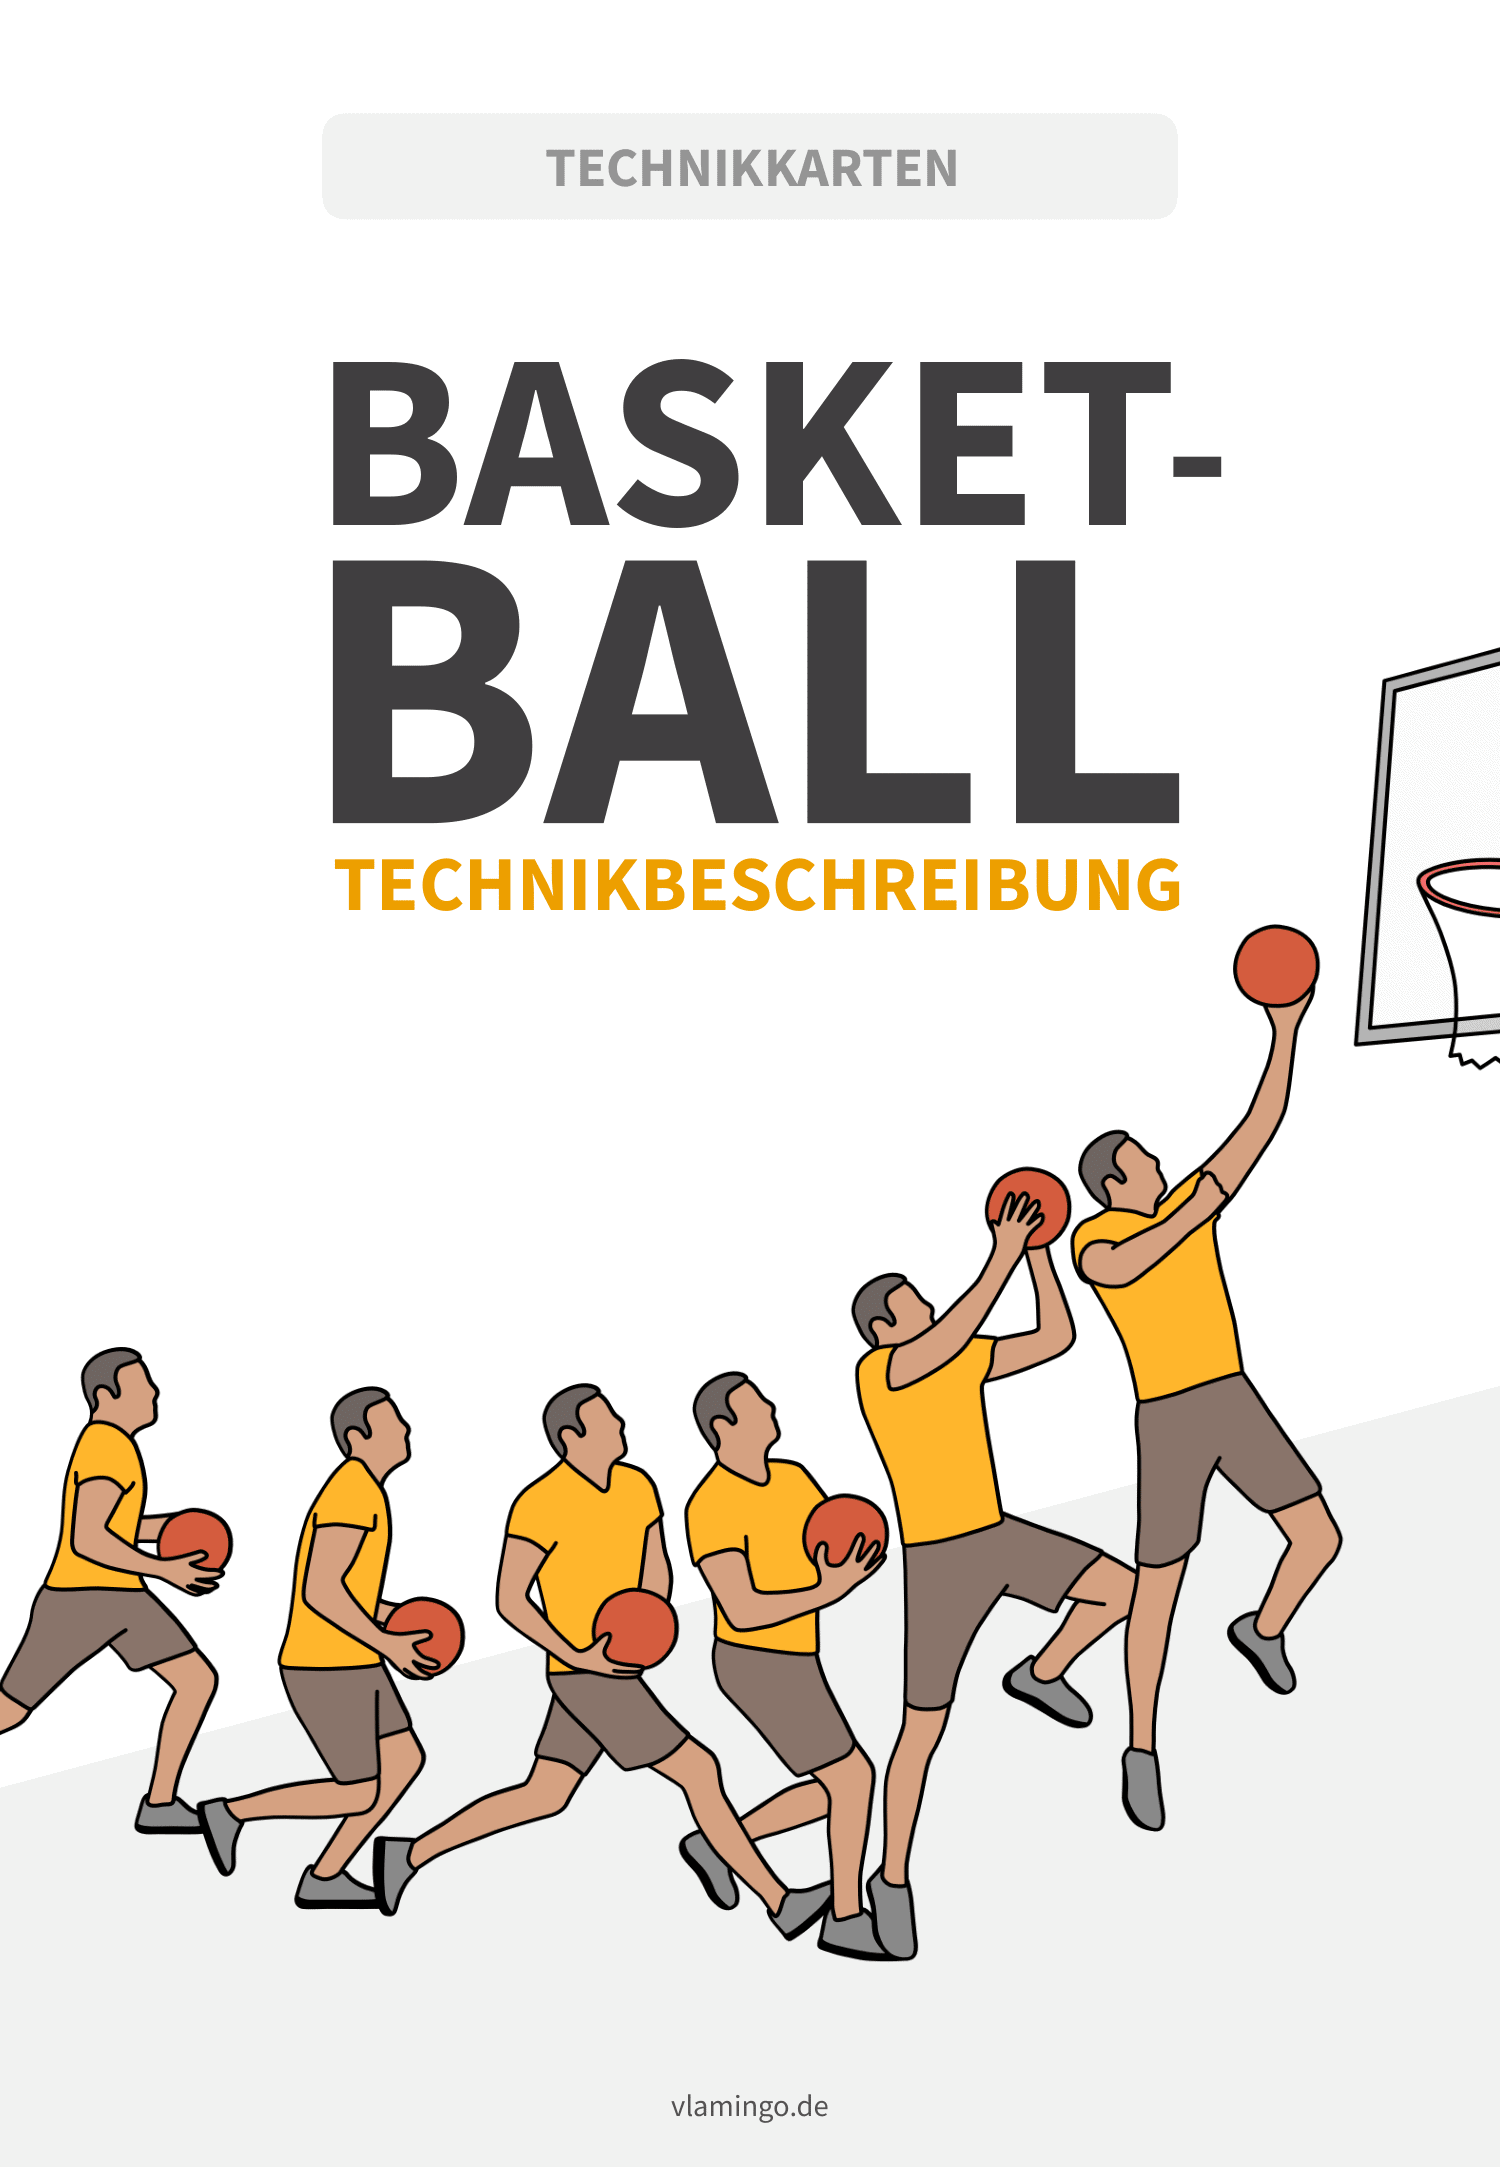 Basketball - Technikkarten